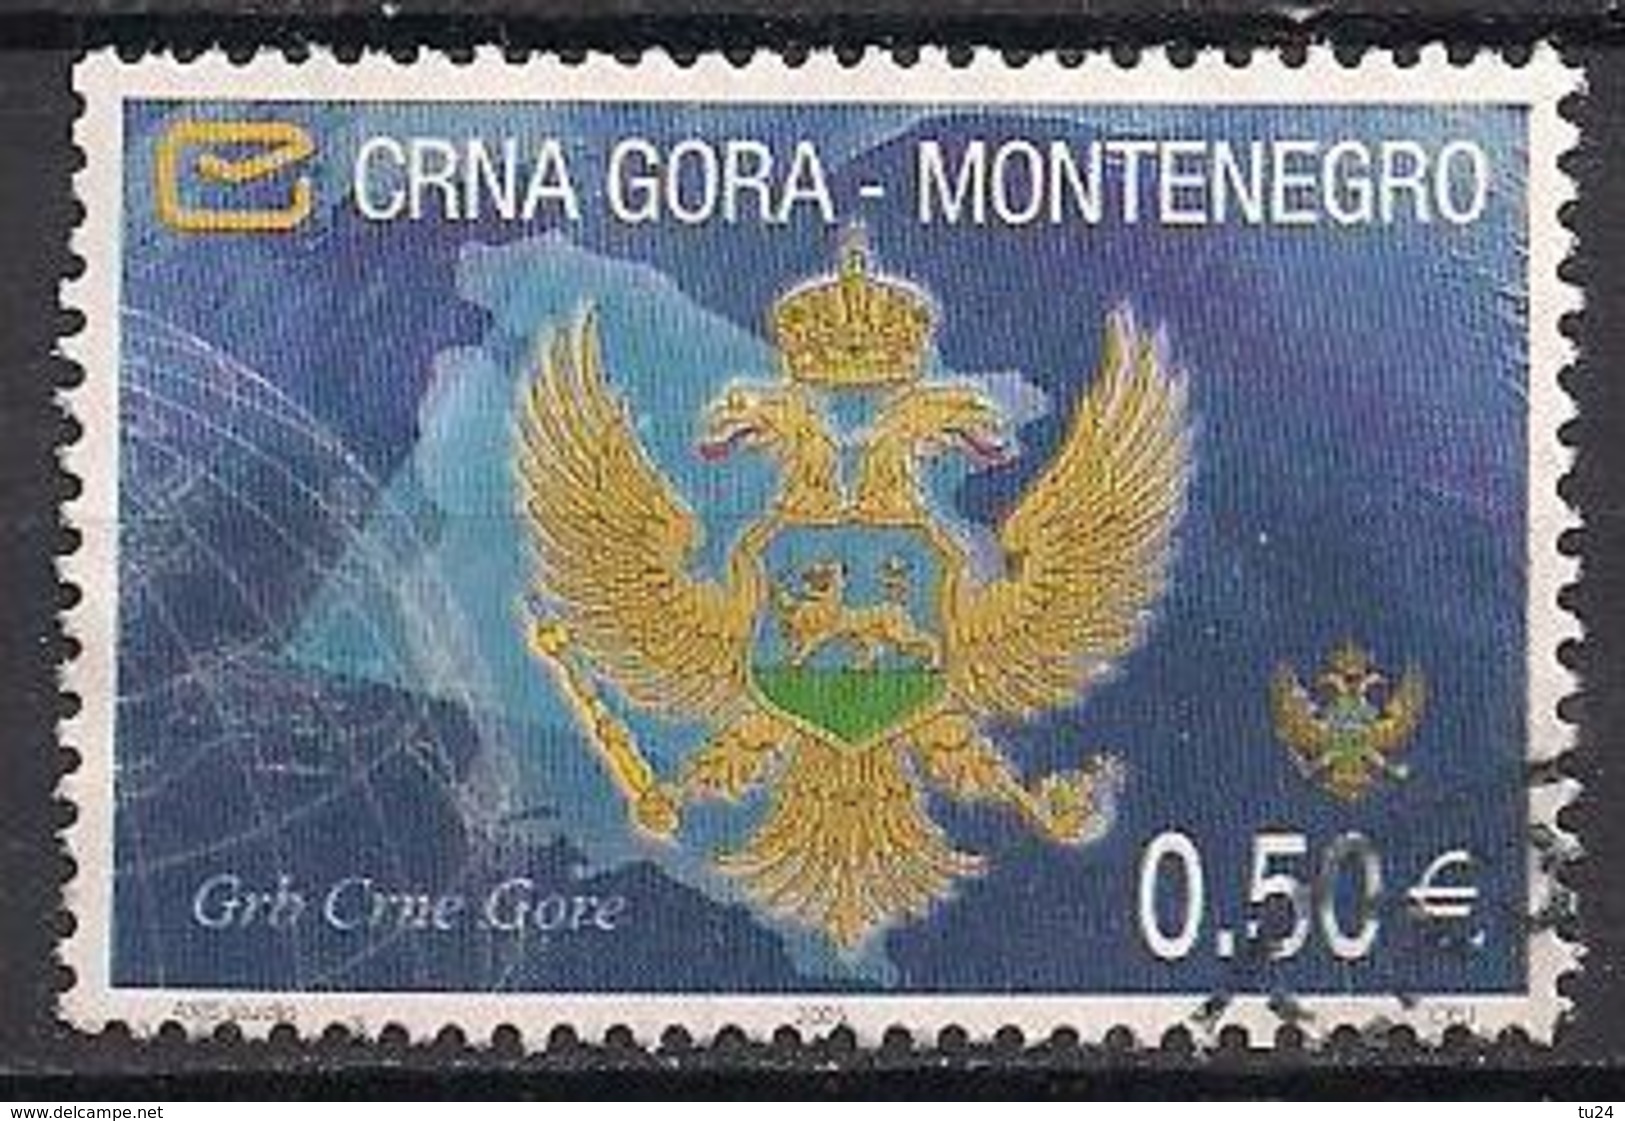 Montenegro  (2005)  Mi.Nr.  102 I  Gest. / Used  (2ff30) - Montenegro